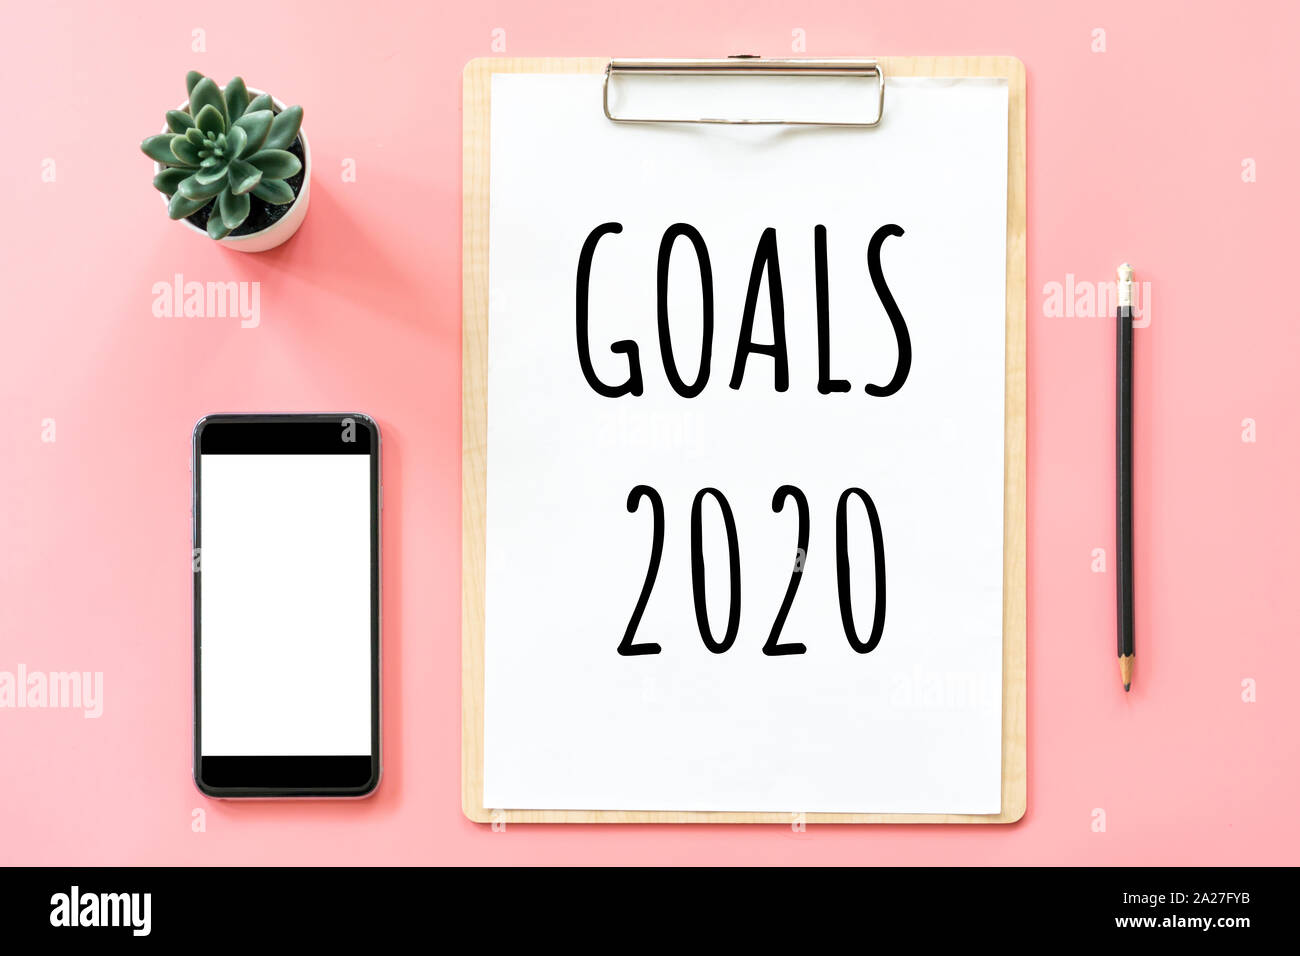 Anno nuovo concetto. Obiettivi 2020 e articoli di cartoleria, vuoto negli appunti, smartphone, pot impianto su pink color pastello con spazio di copia Foto Stock